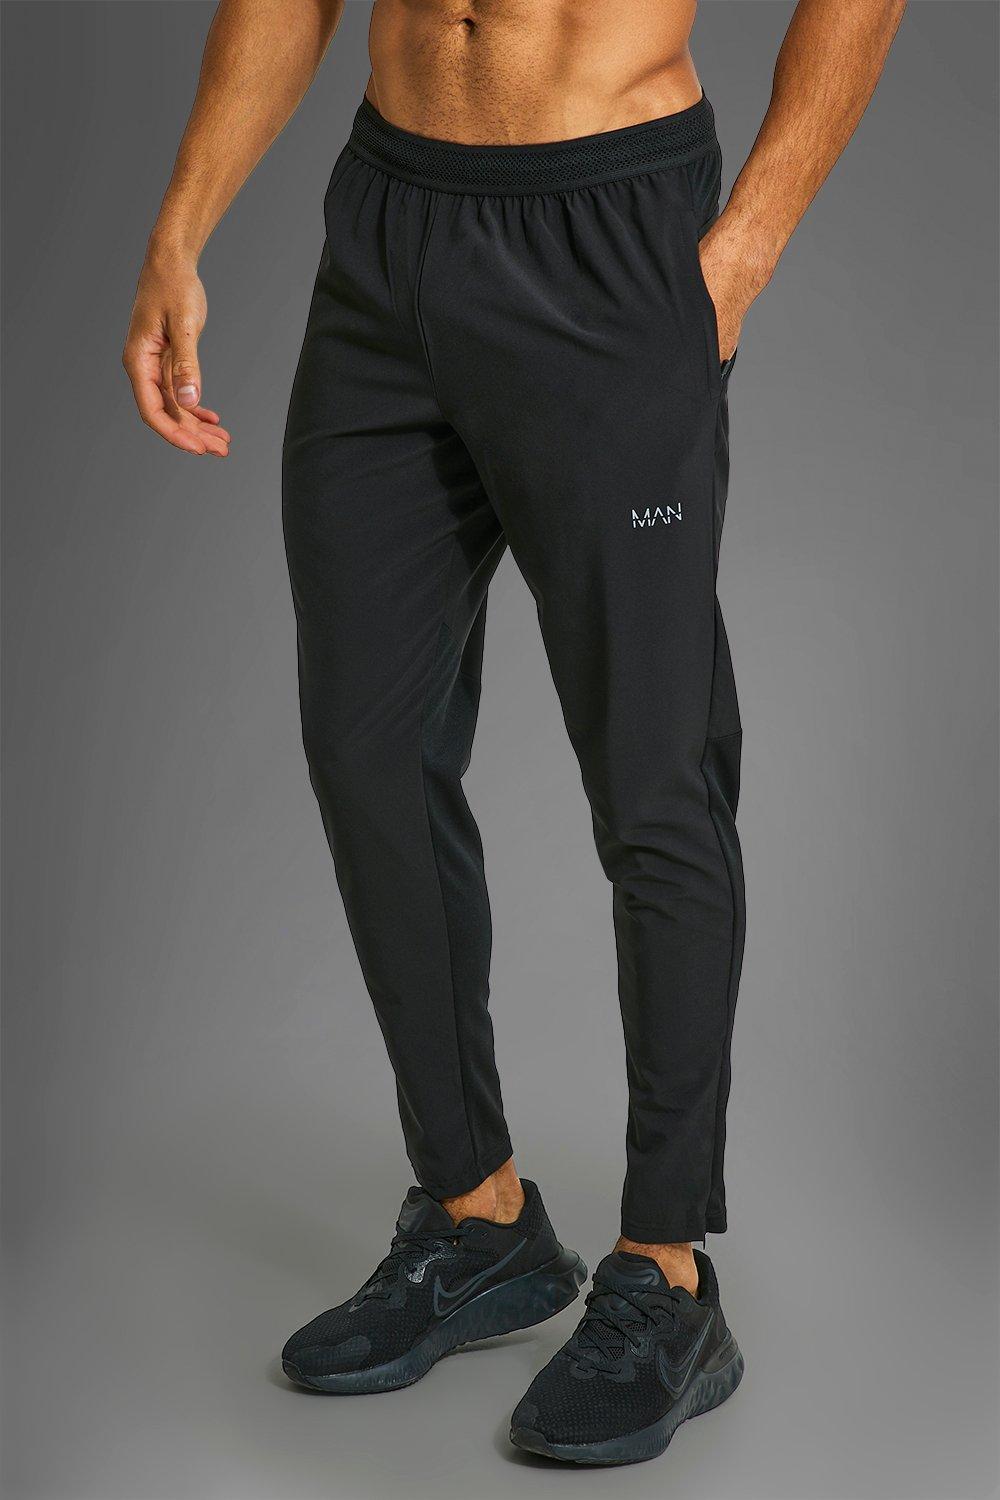 Mens Man Active Performance Jogginghose mit Reißverschluss-Taschen - black - L, black von boohooman